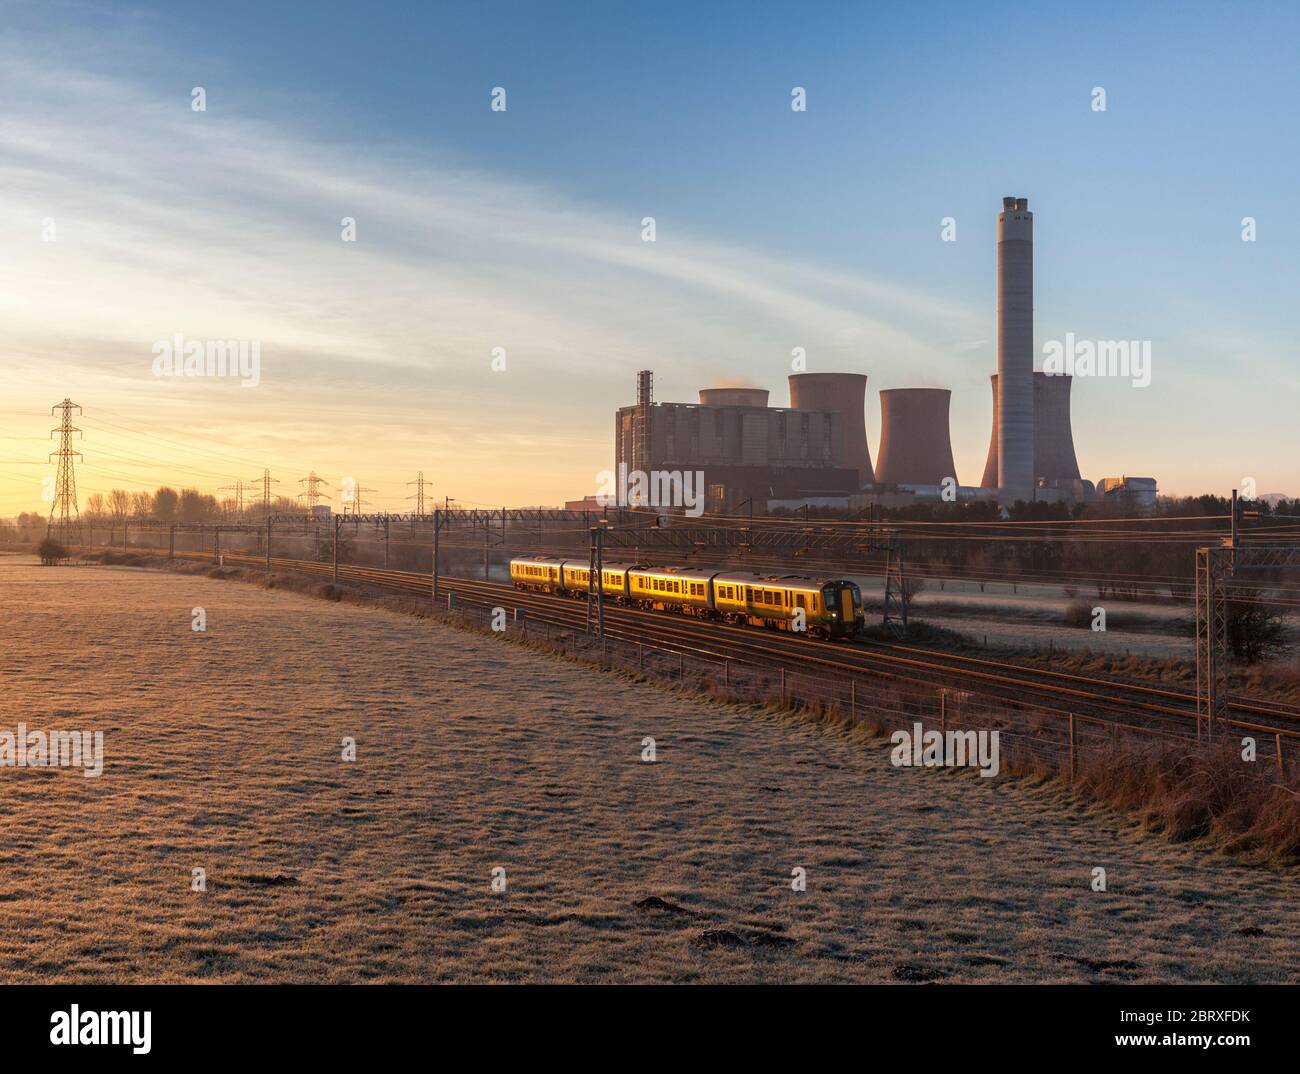 London Midland Siemens Desiro trenino elettrico classe 350 che passa davanti alla centrale elettrica a carbone di Rugeley sulla linea principale elettrificata della costa occidentale Foto Stock